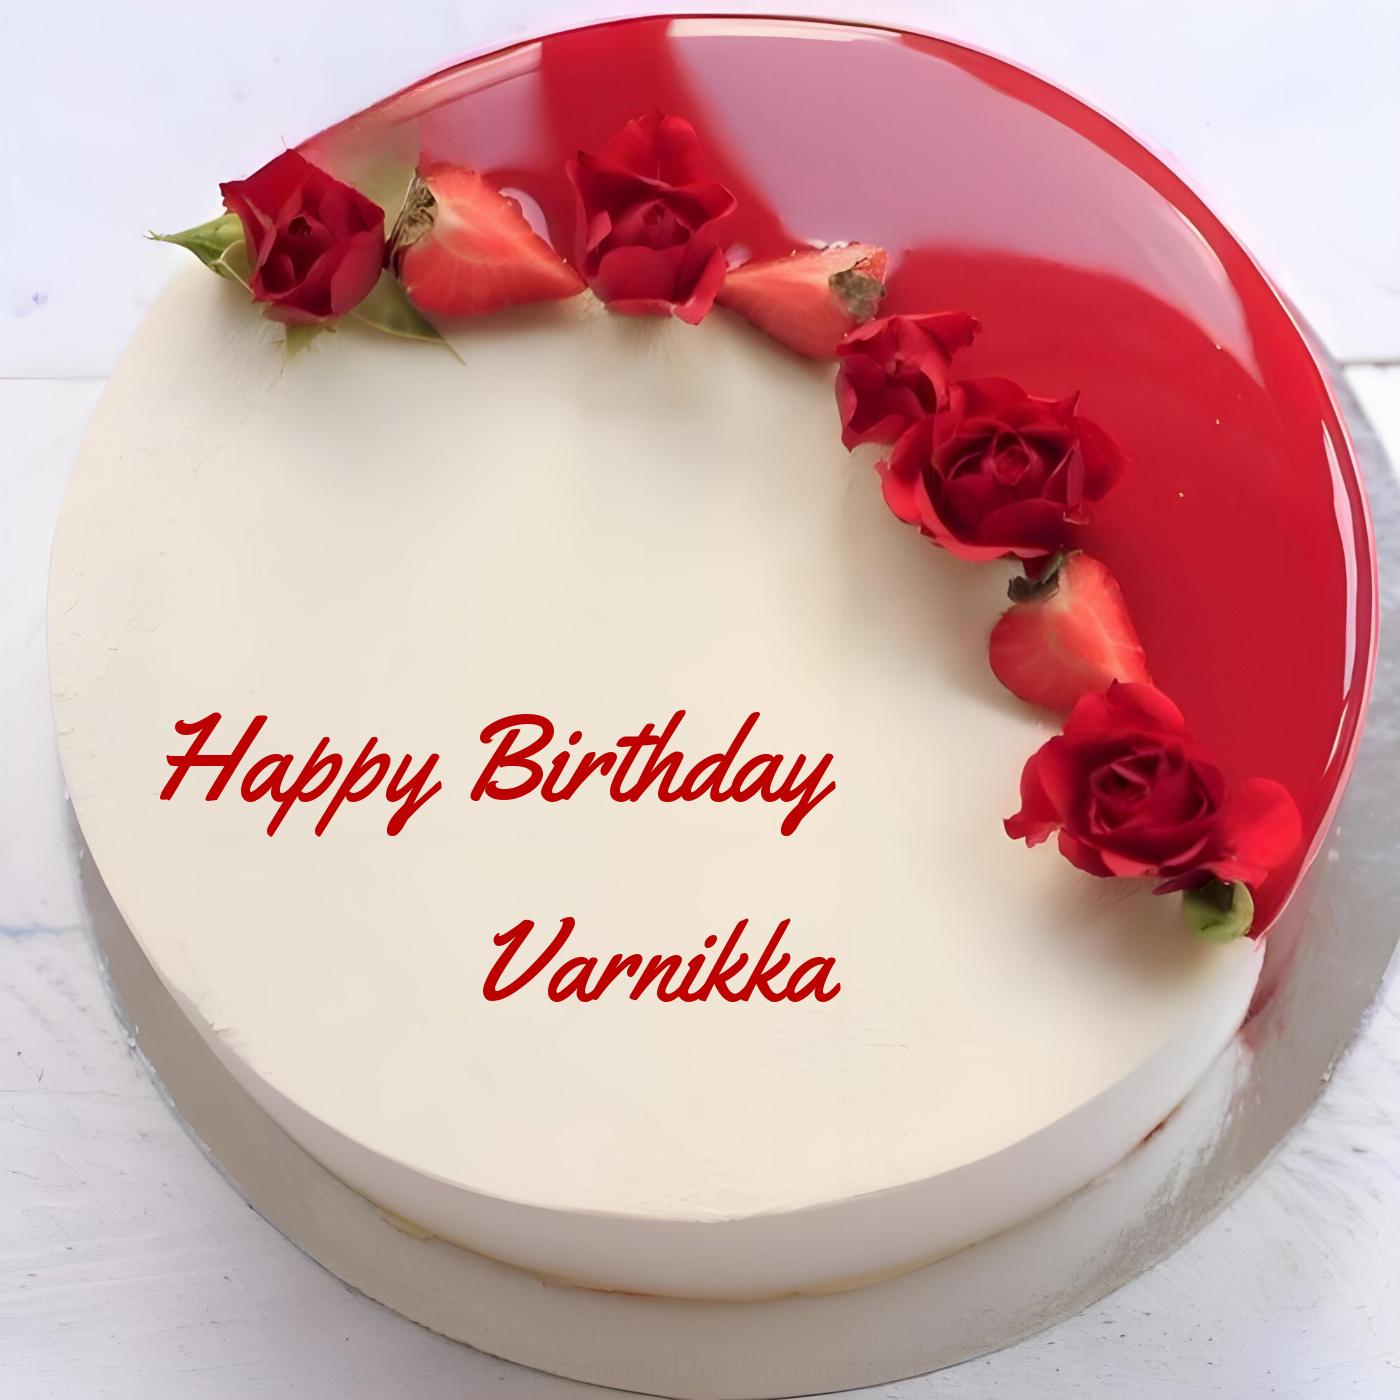 Happy Birthday Varnikka Rose Straberry Red Cake